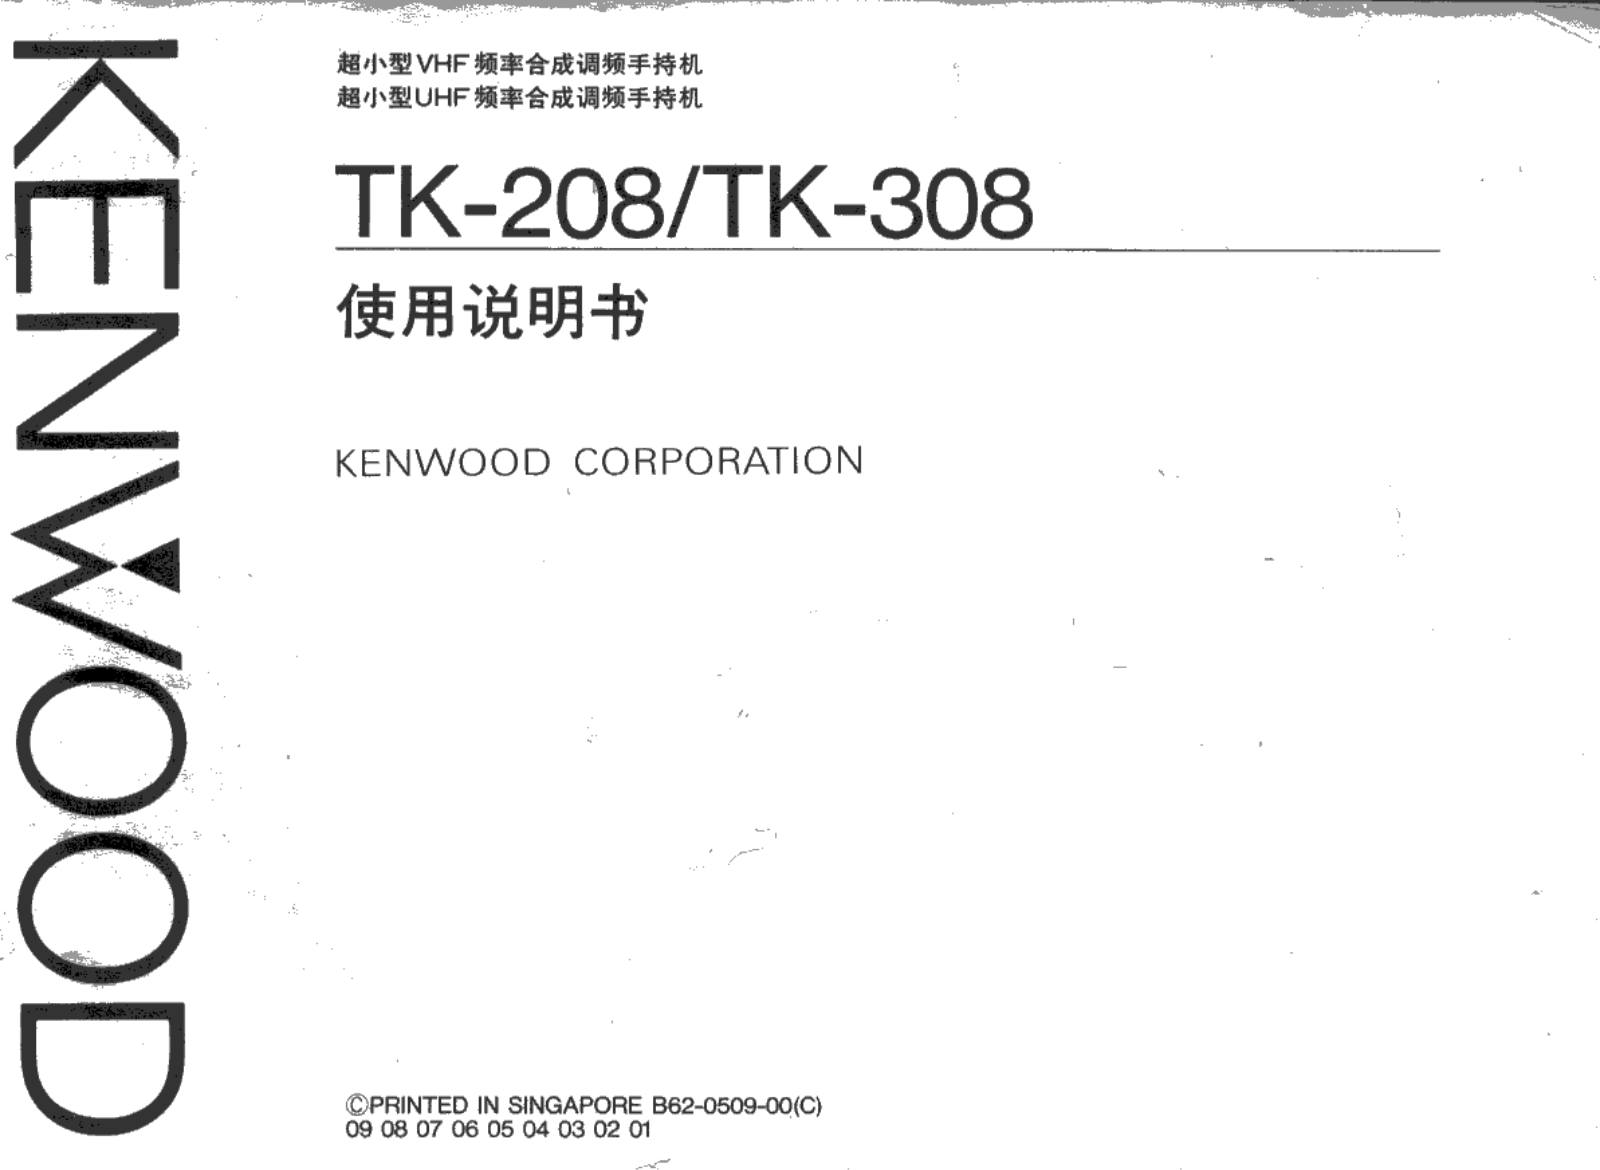 KENWOOD TK-208, TK-308 User Manual